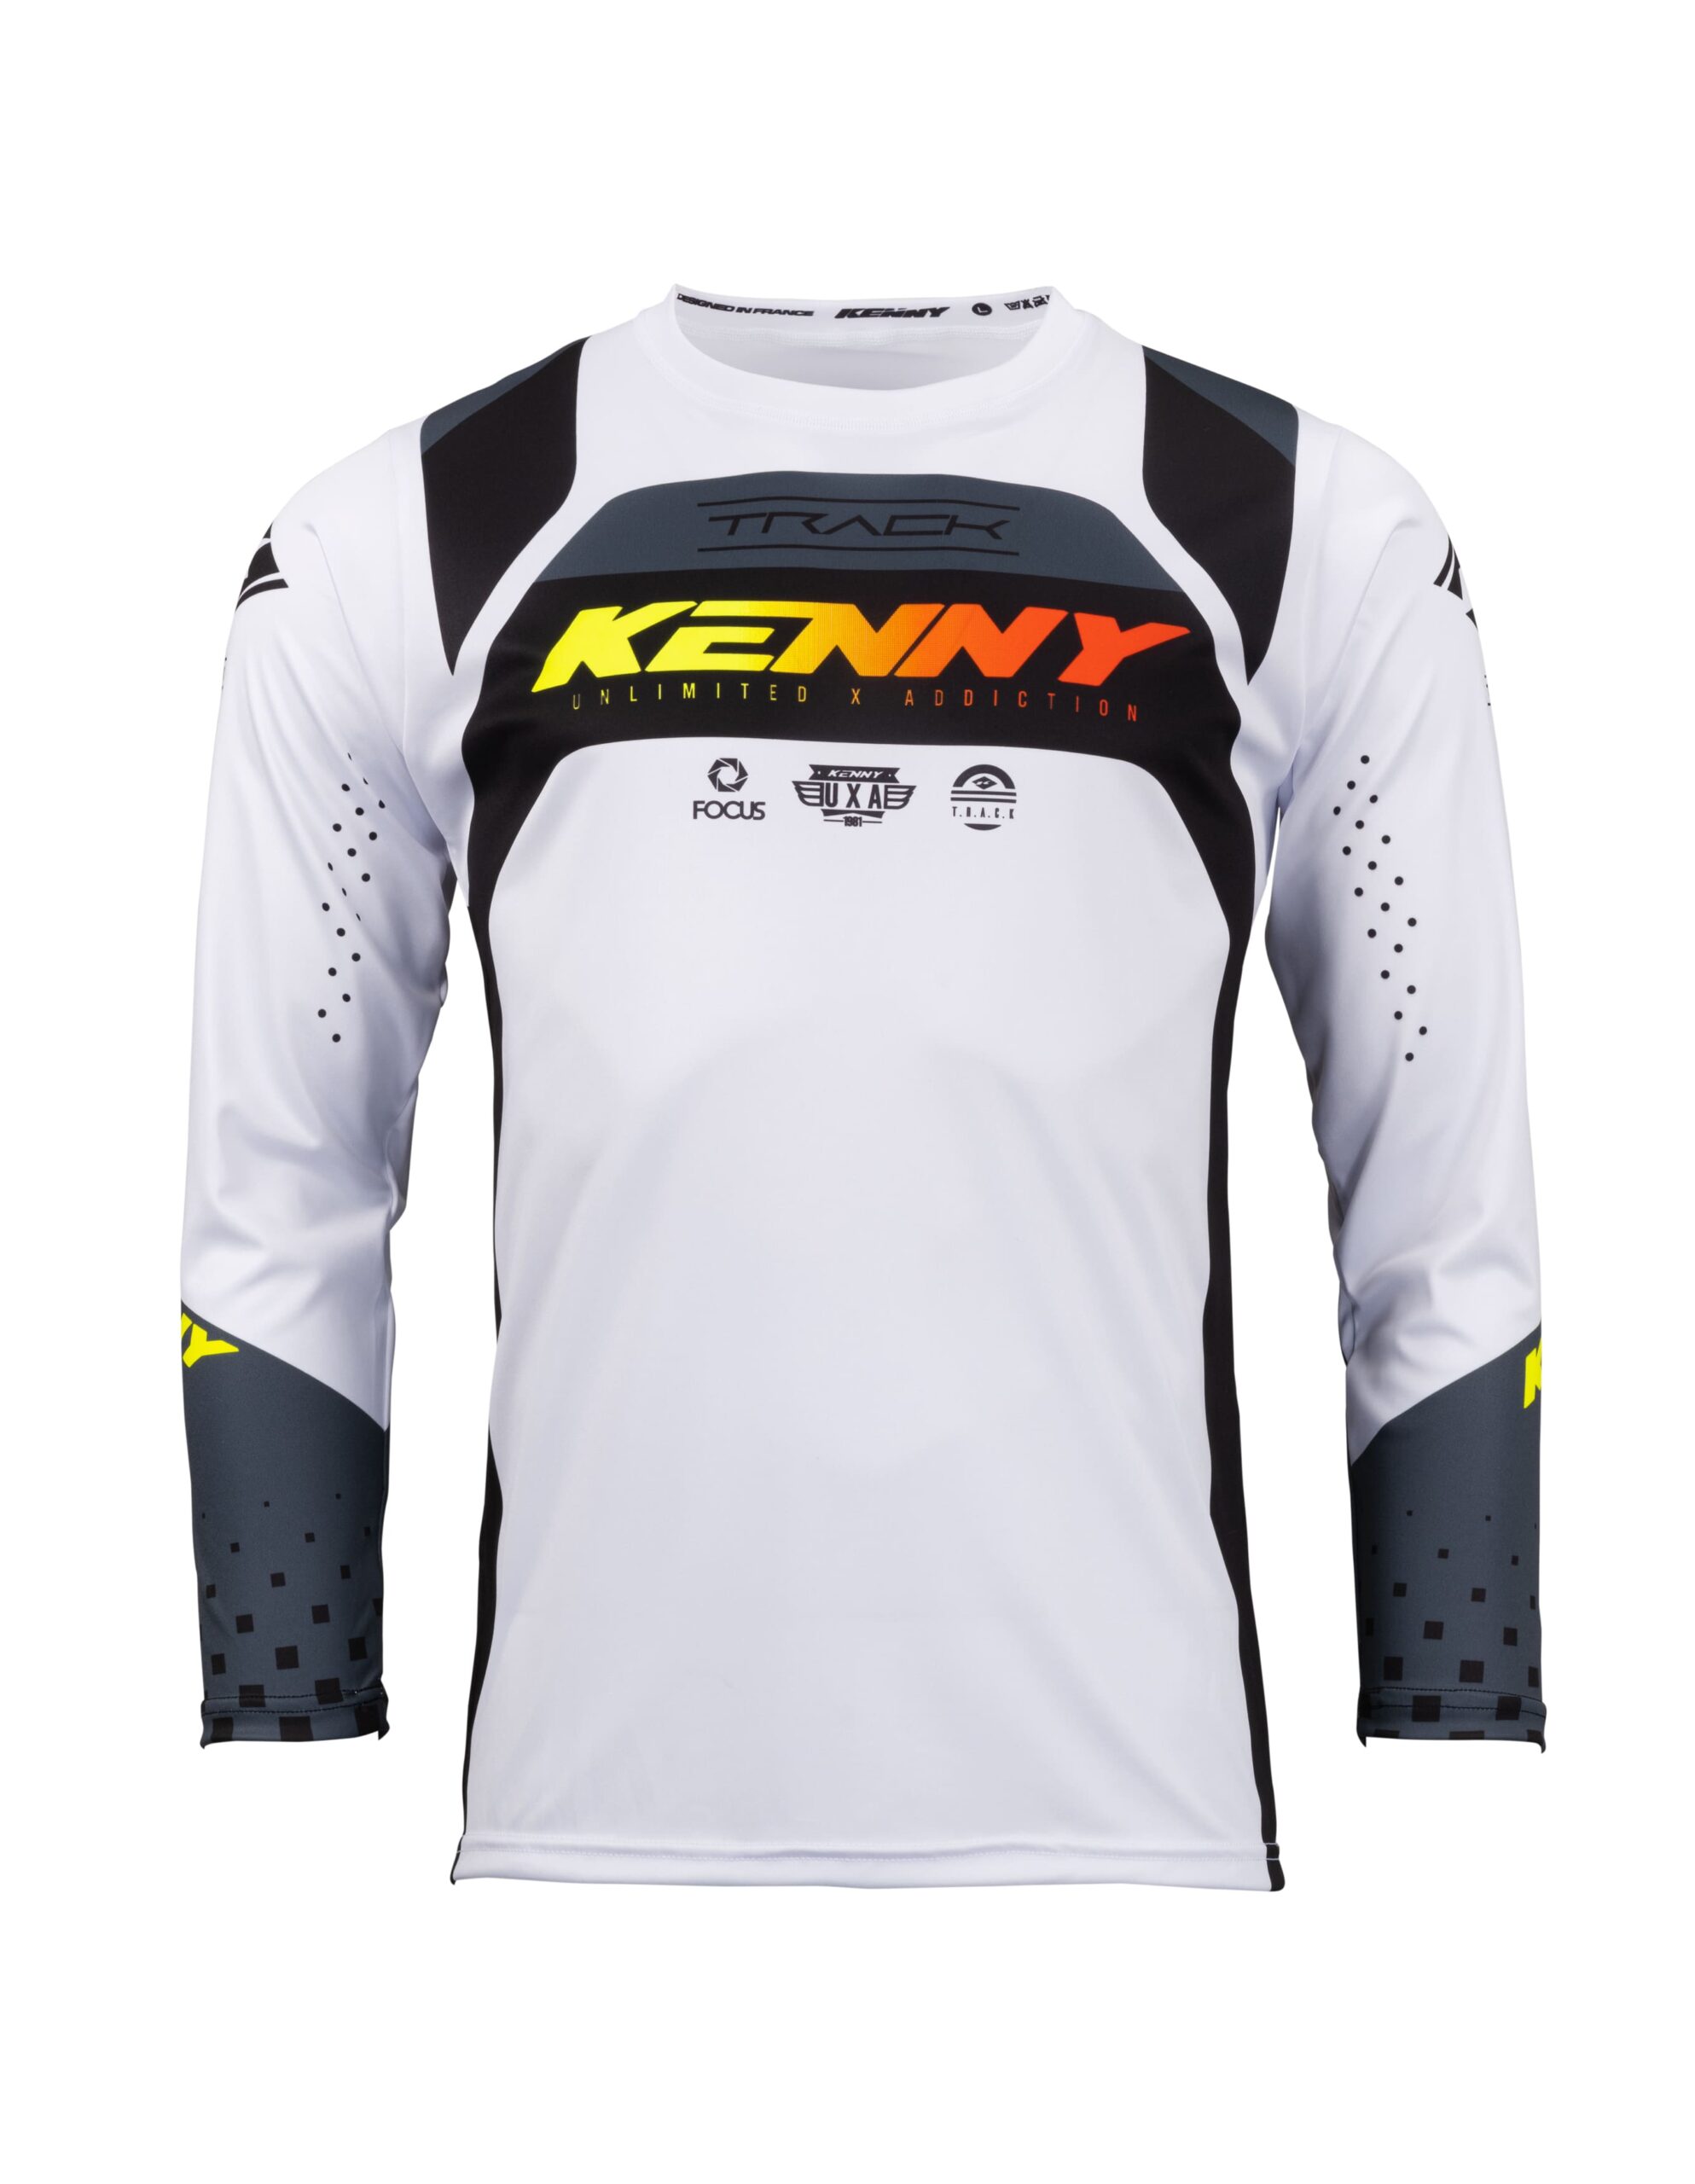 maillot_motocross_kenny_track_focus_black_white